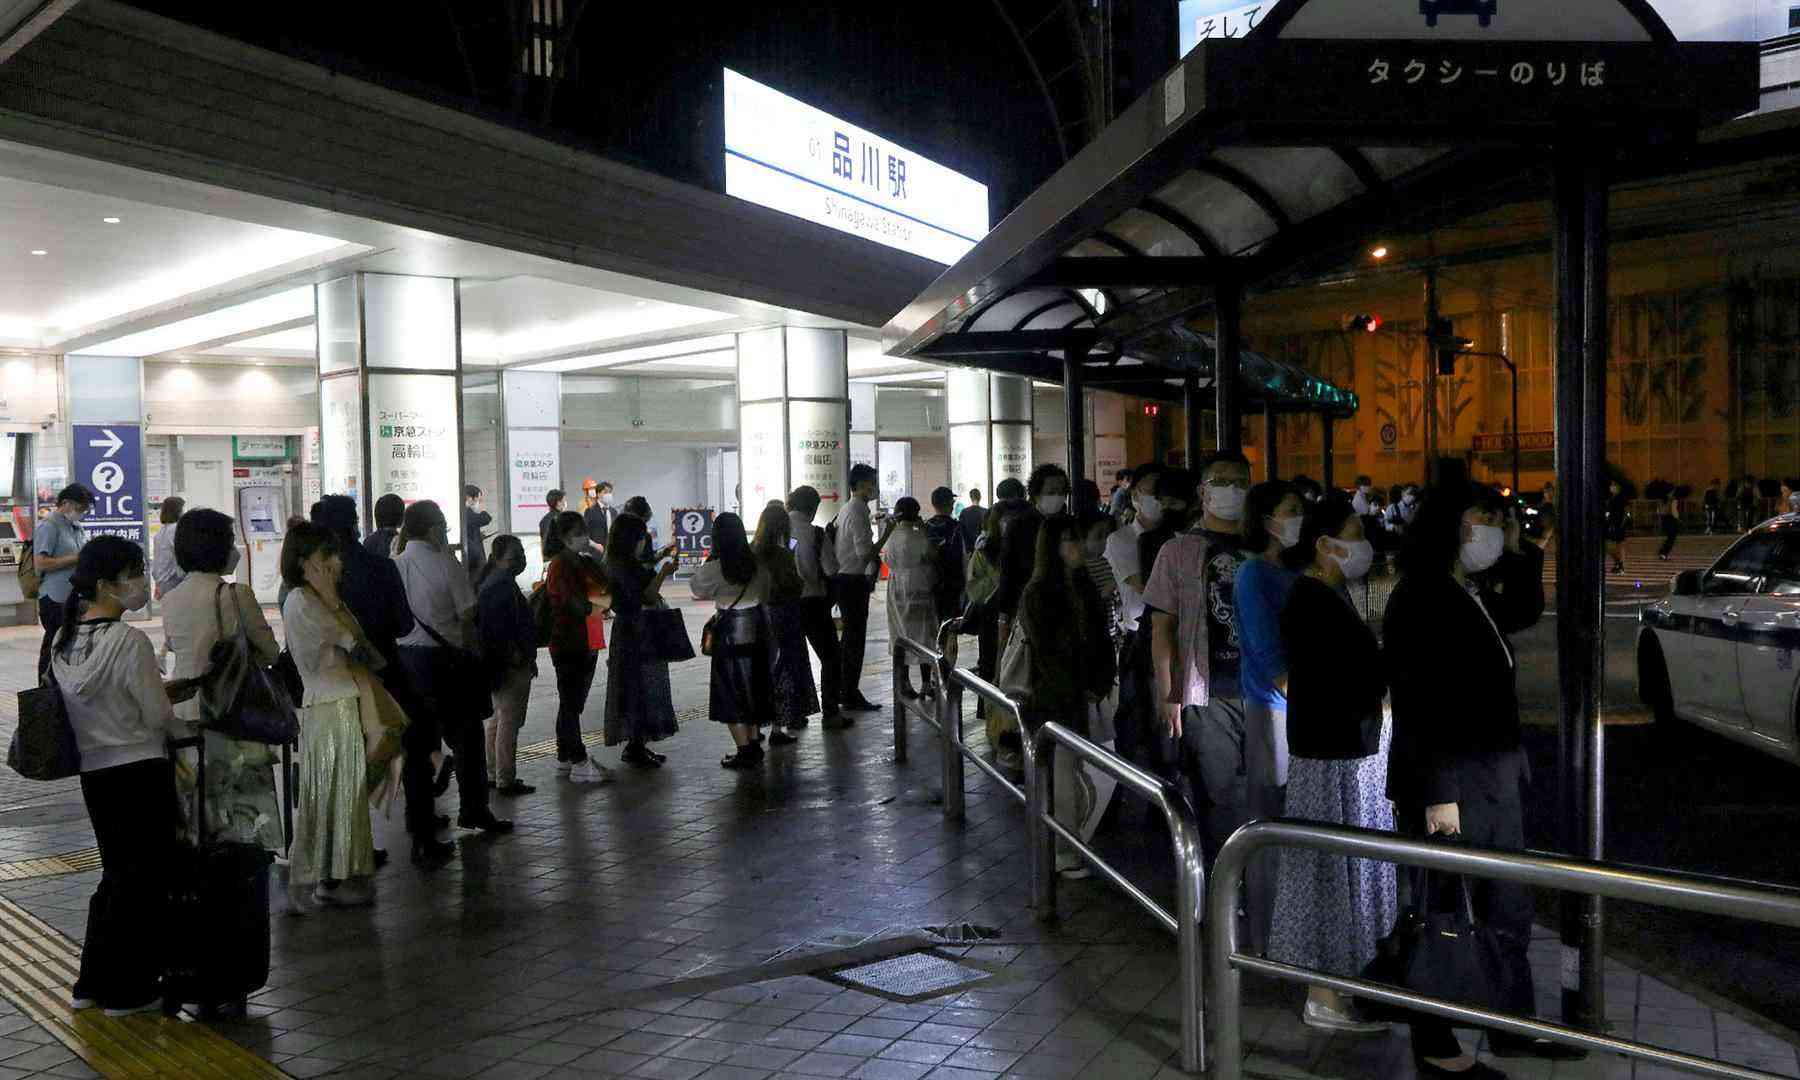  Terremoto de magnitude 6,1 deixa mais de 30 feridos na região de Tóquio 